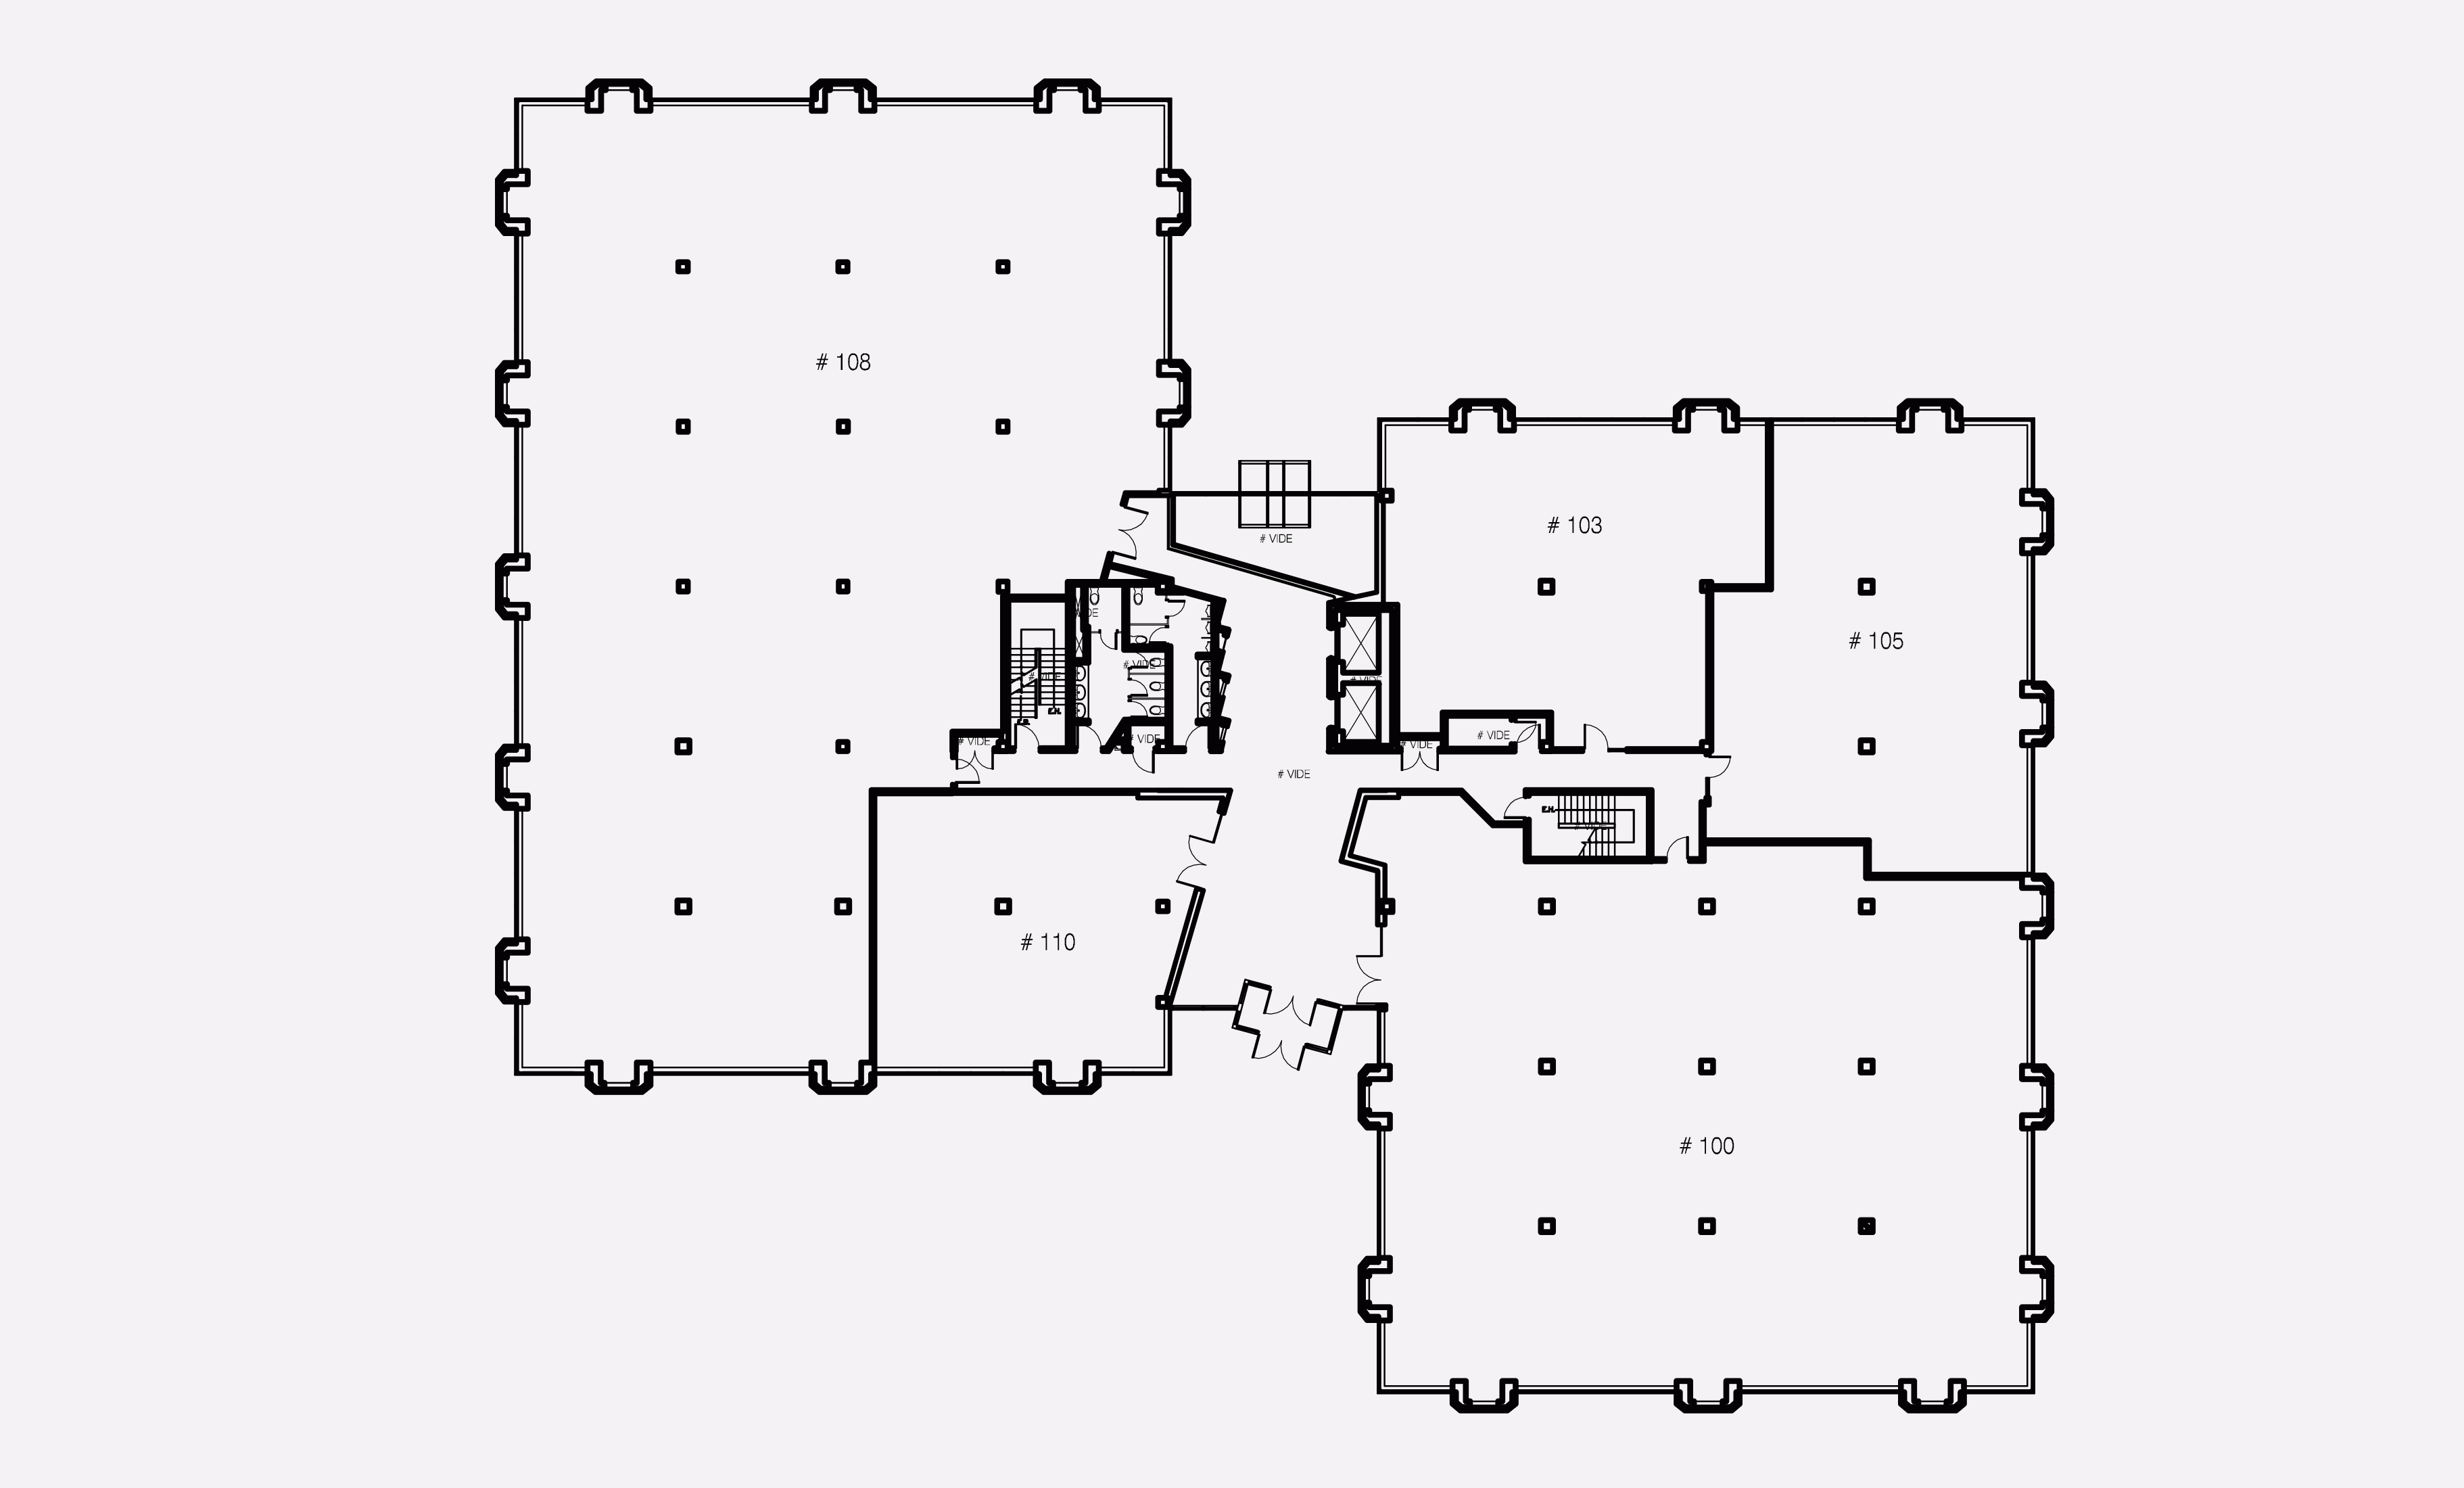 1st floor - Plan 1